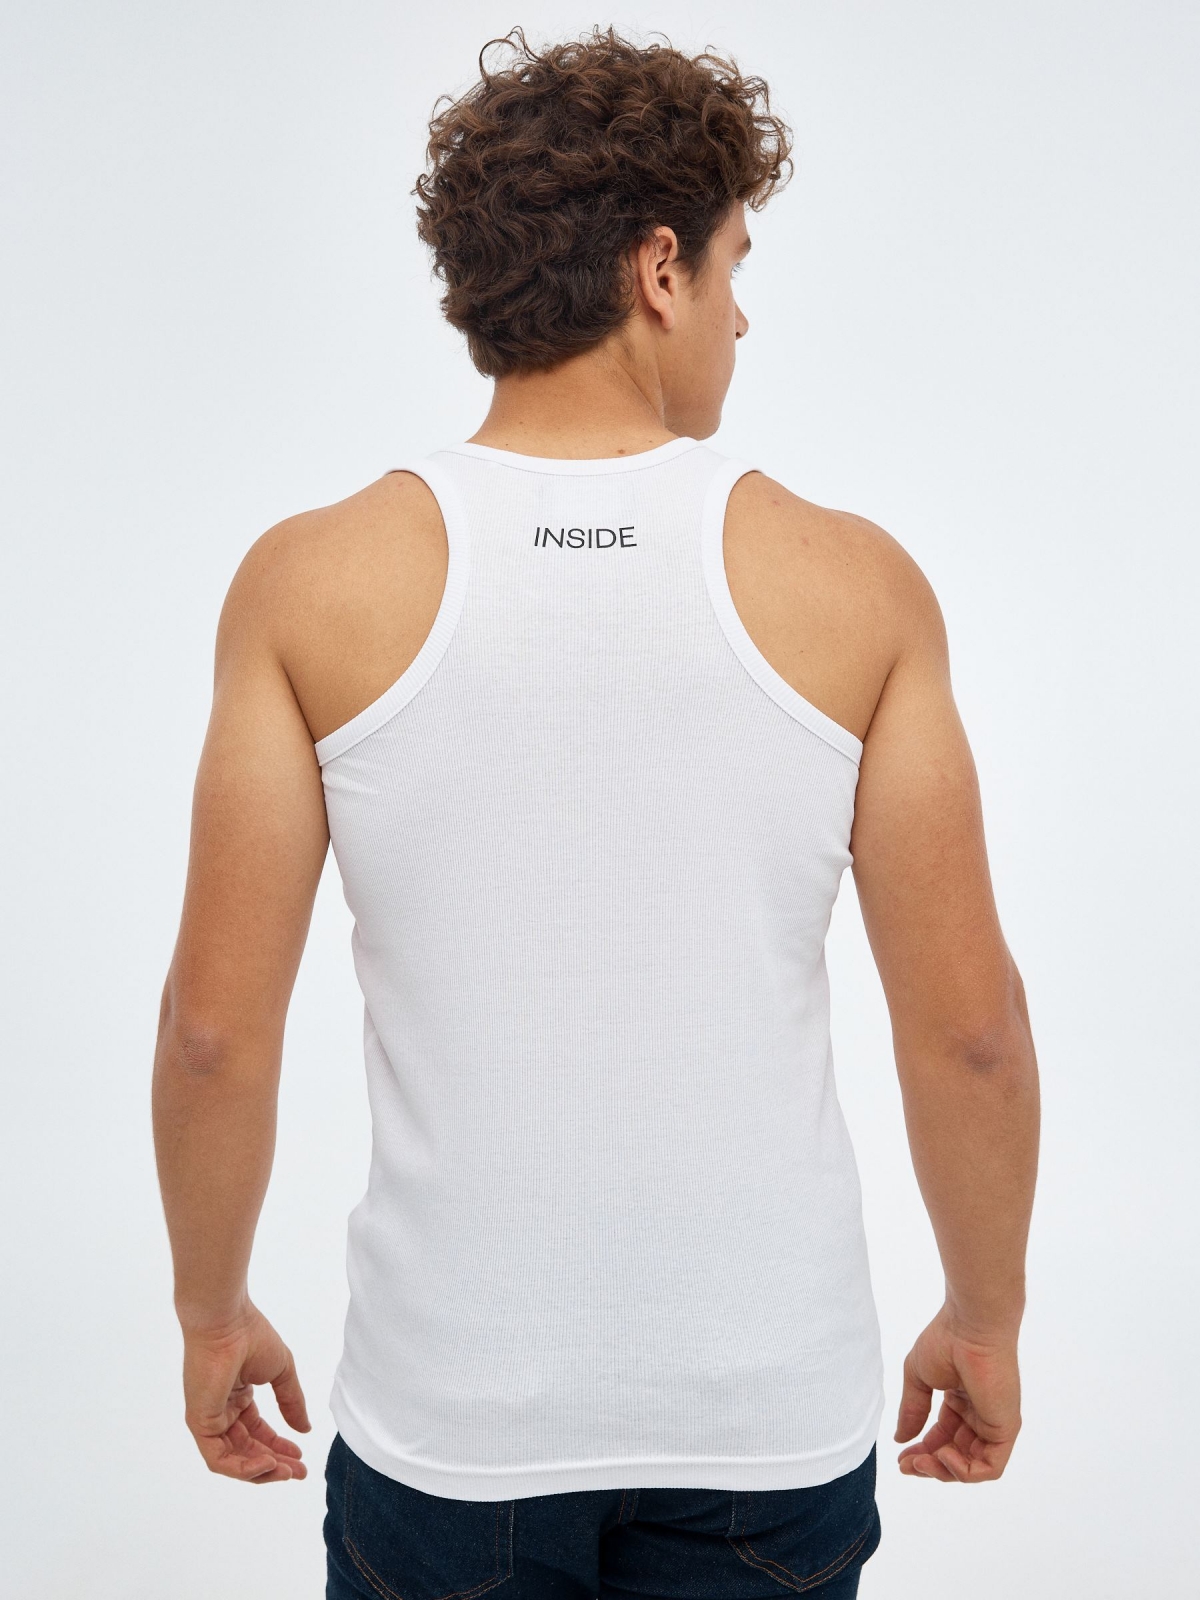 Camiseta básica espalda nadadora blanco vista media trasera